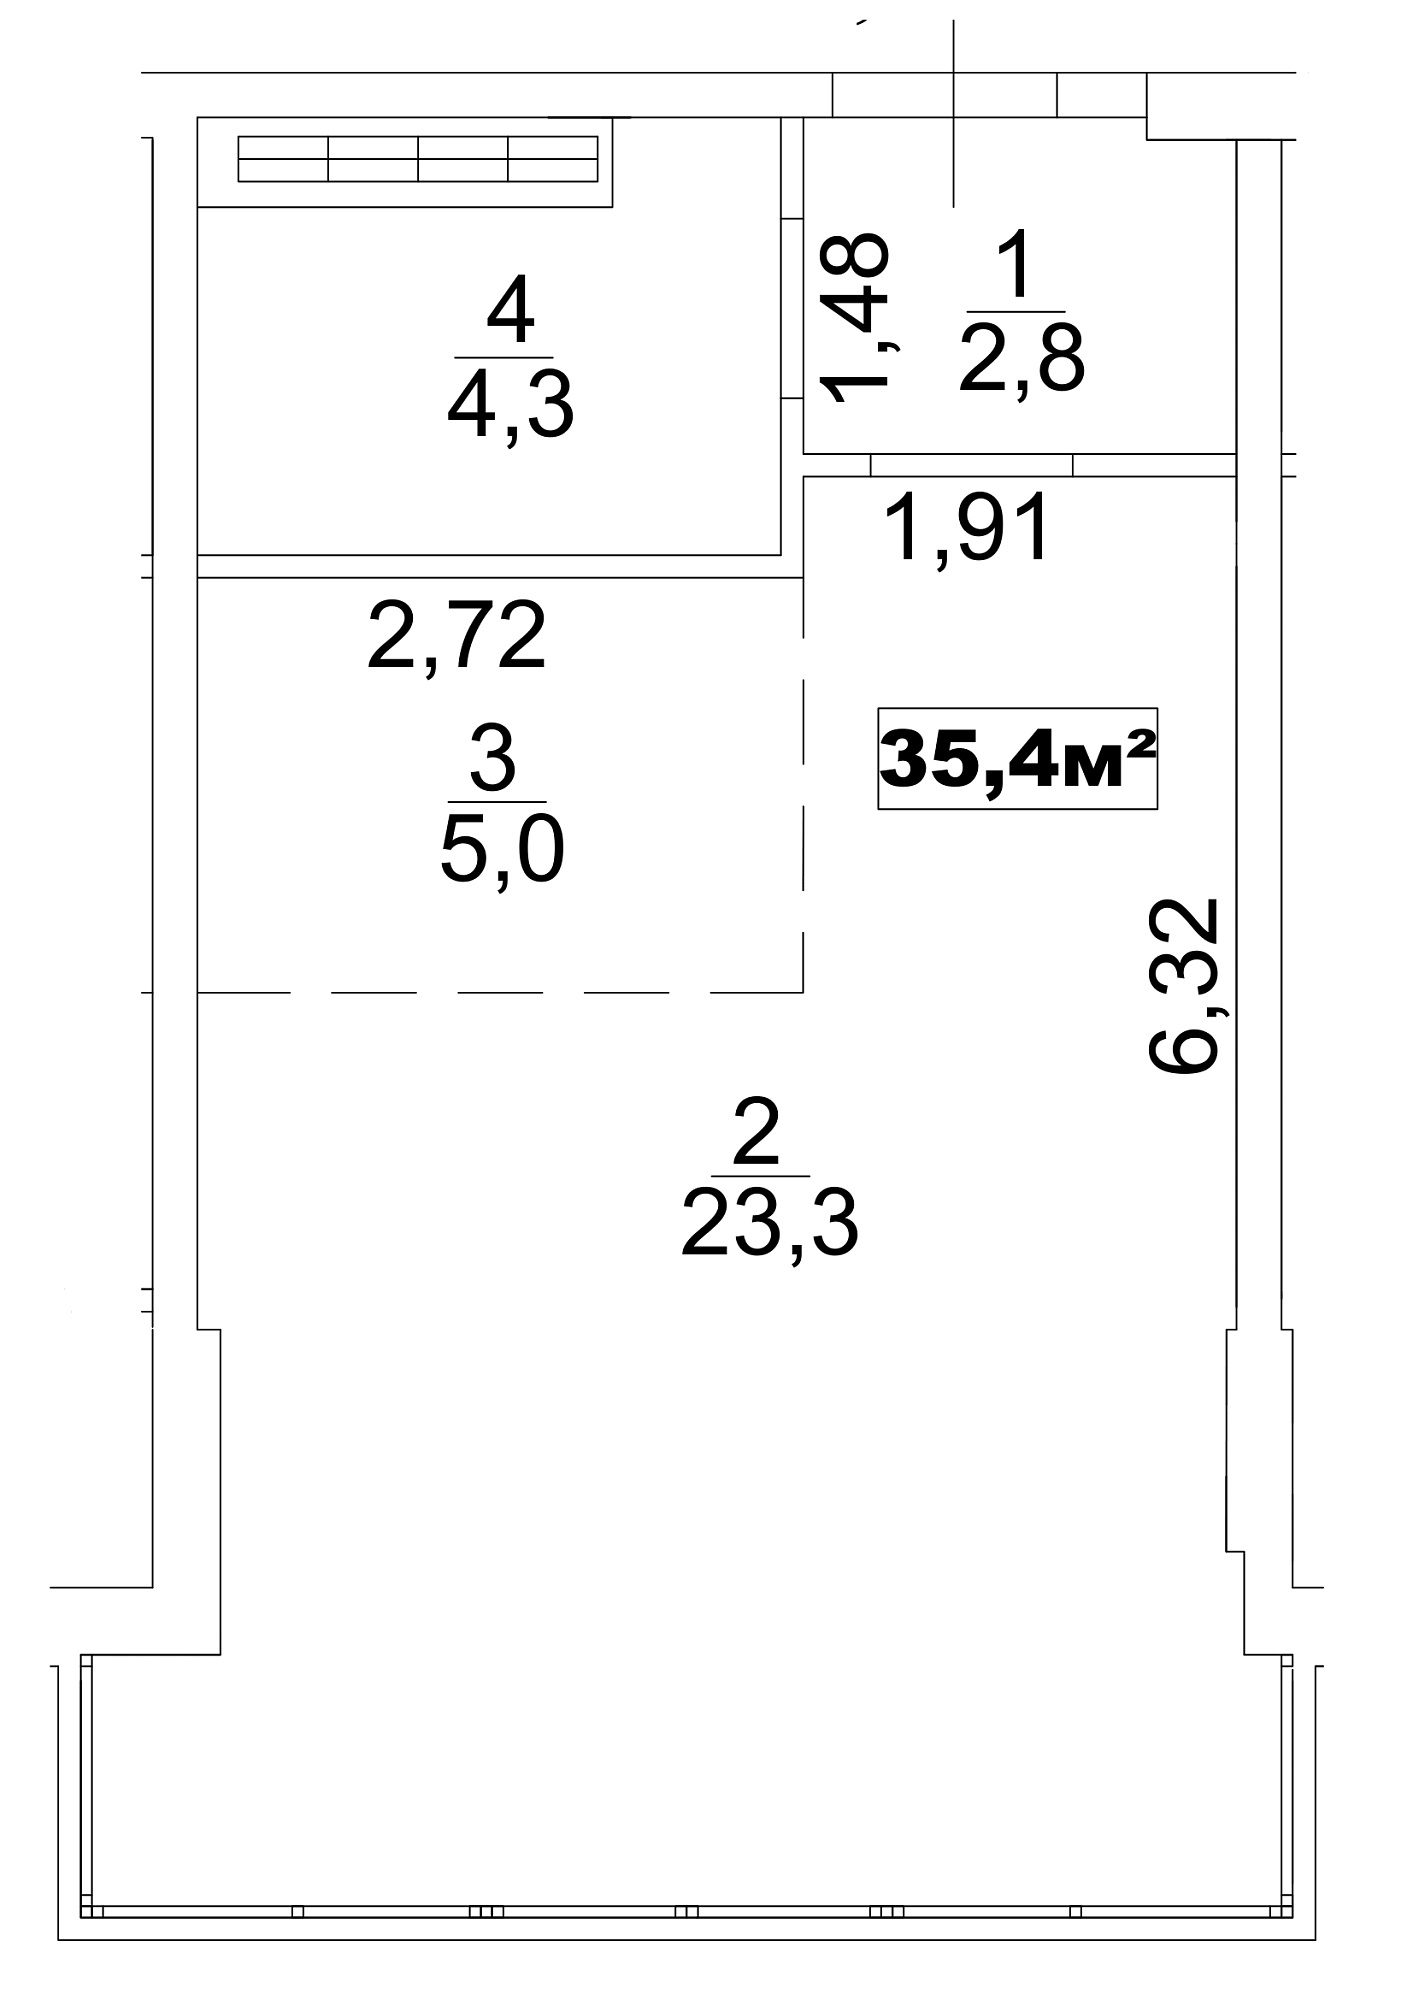 Планування Smart-квартира площею 35.4м2, AB-13-10/0079б.